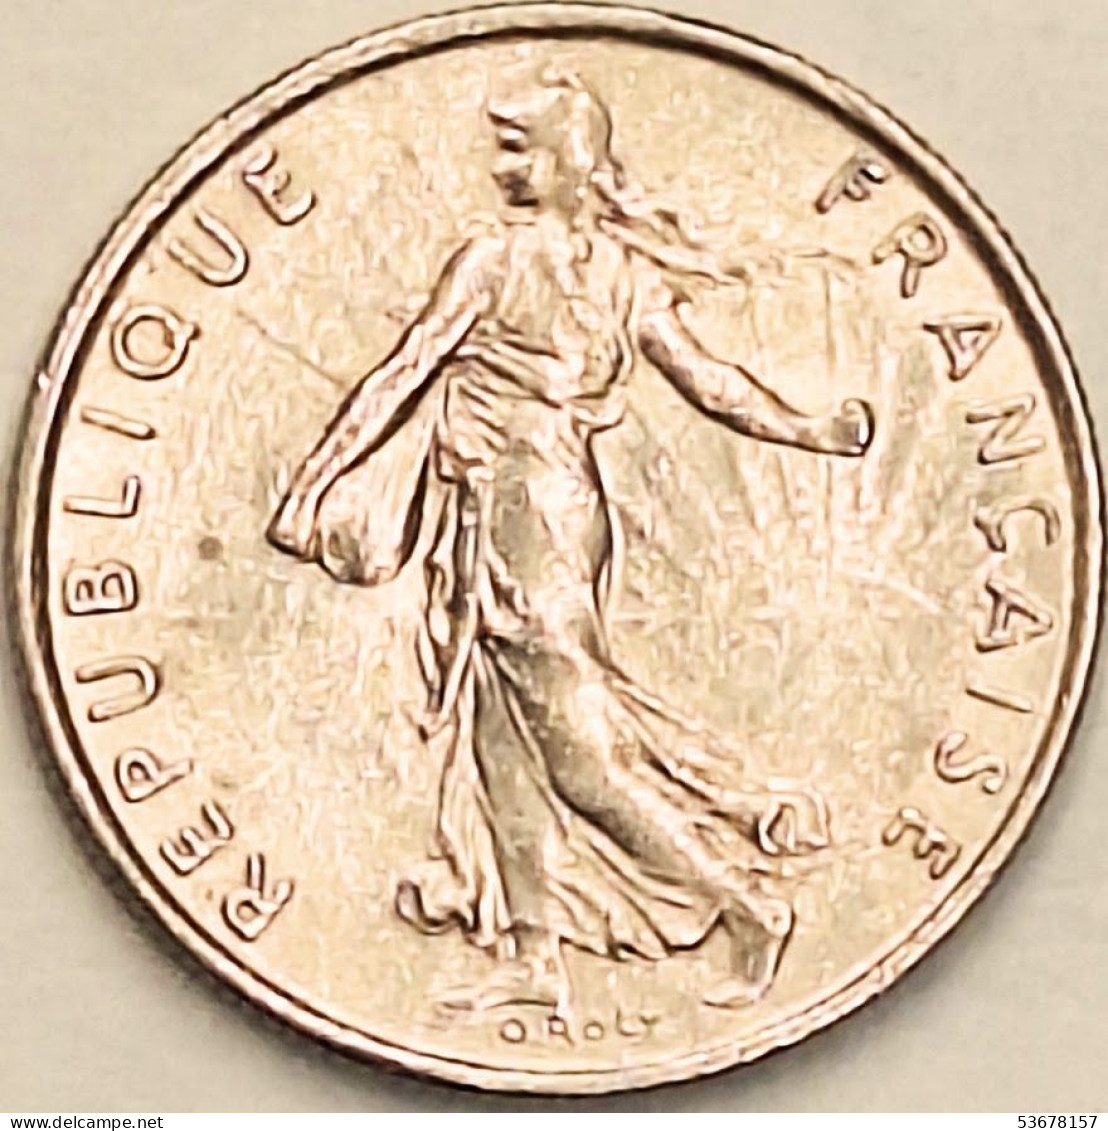 France - 1/2 Franc 1974, KM# 931.1 (#4293) - 1/2 Franc